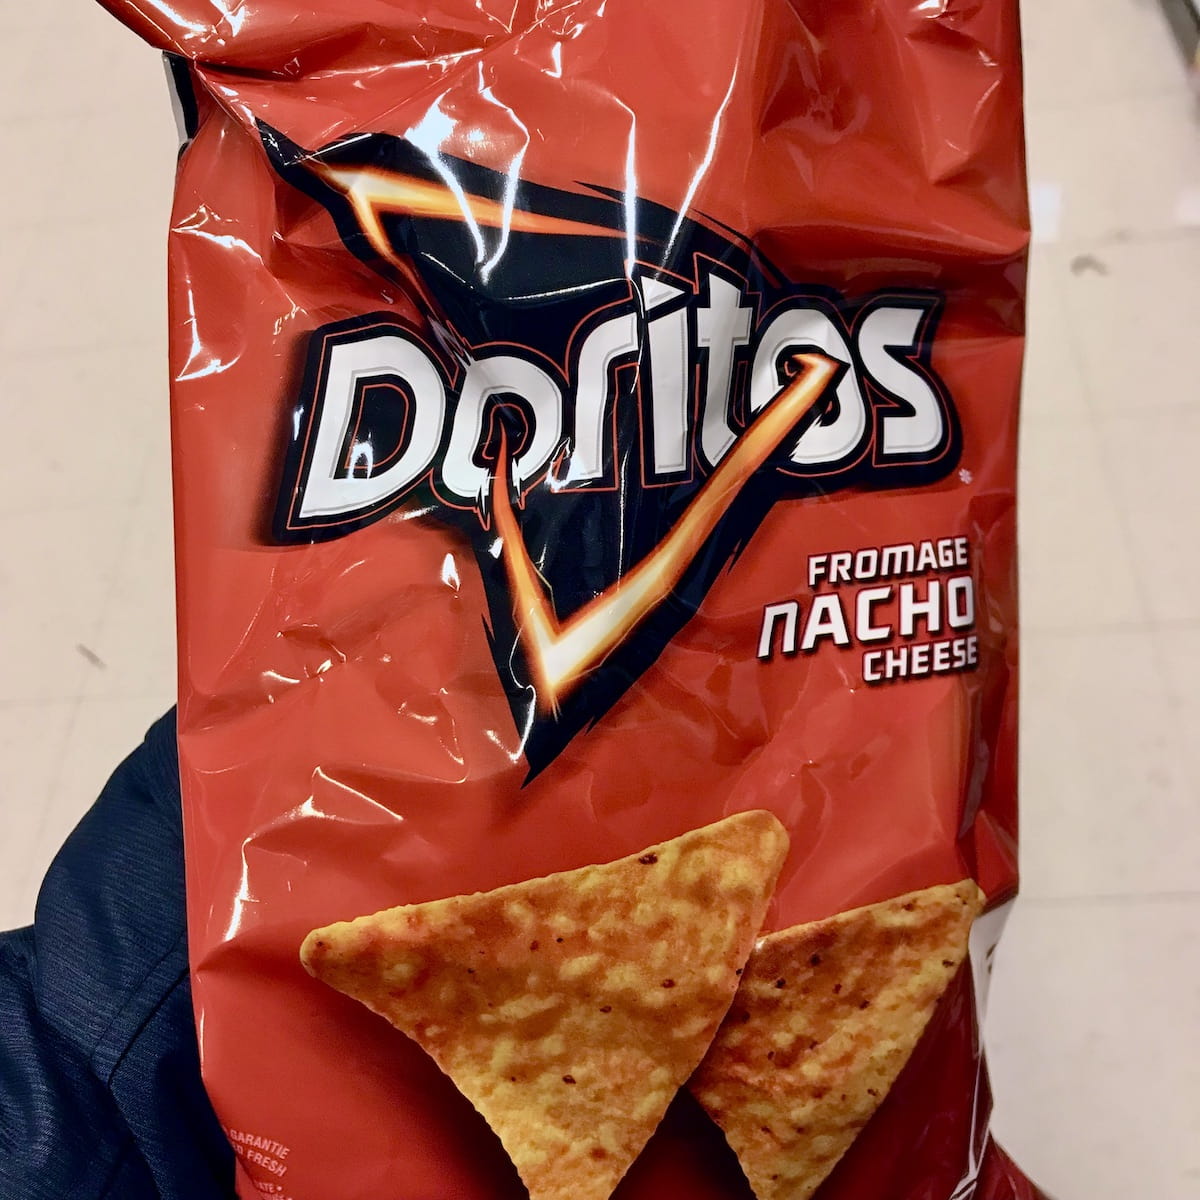 A bag of Nacho Cheese Doritos.